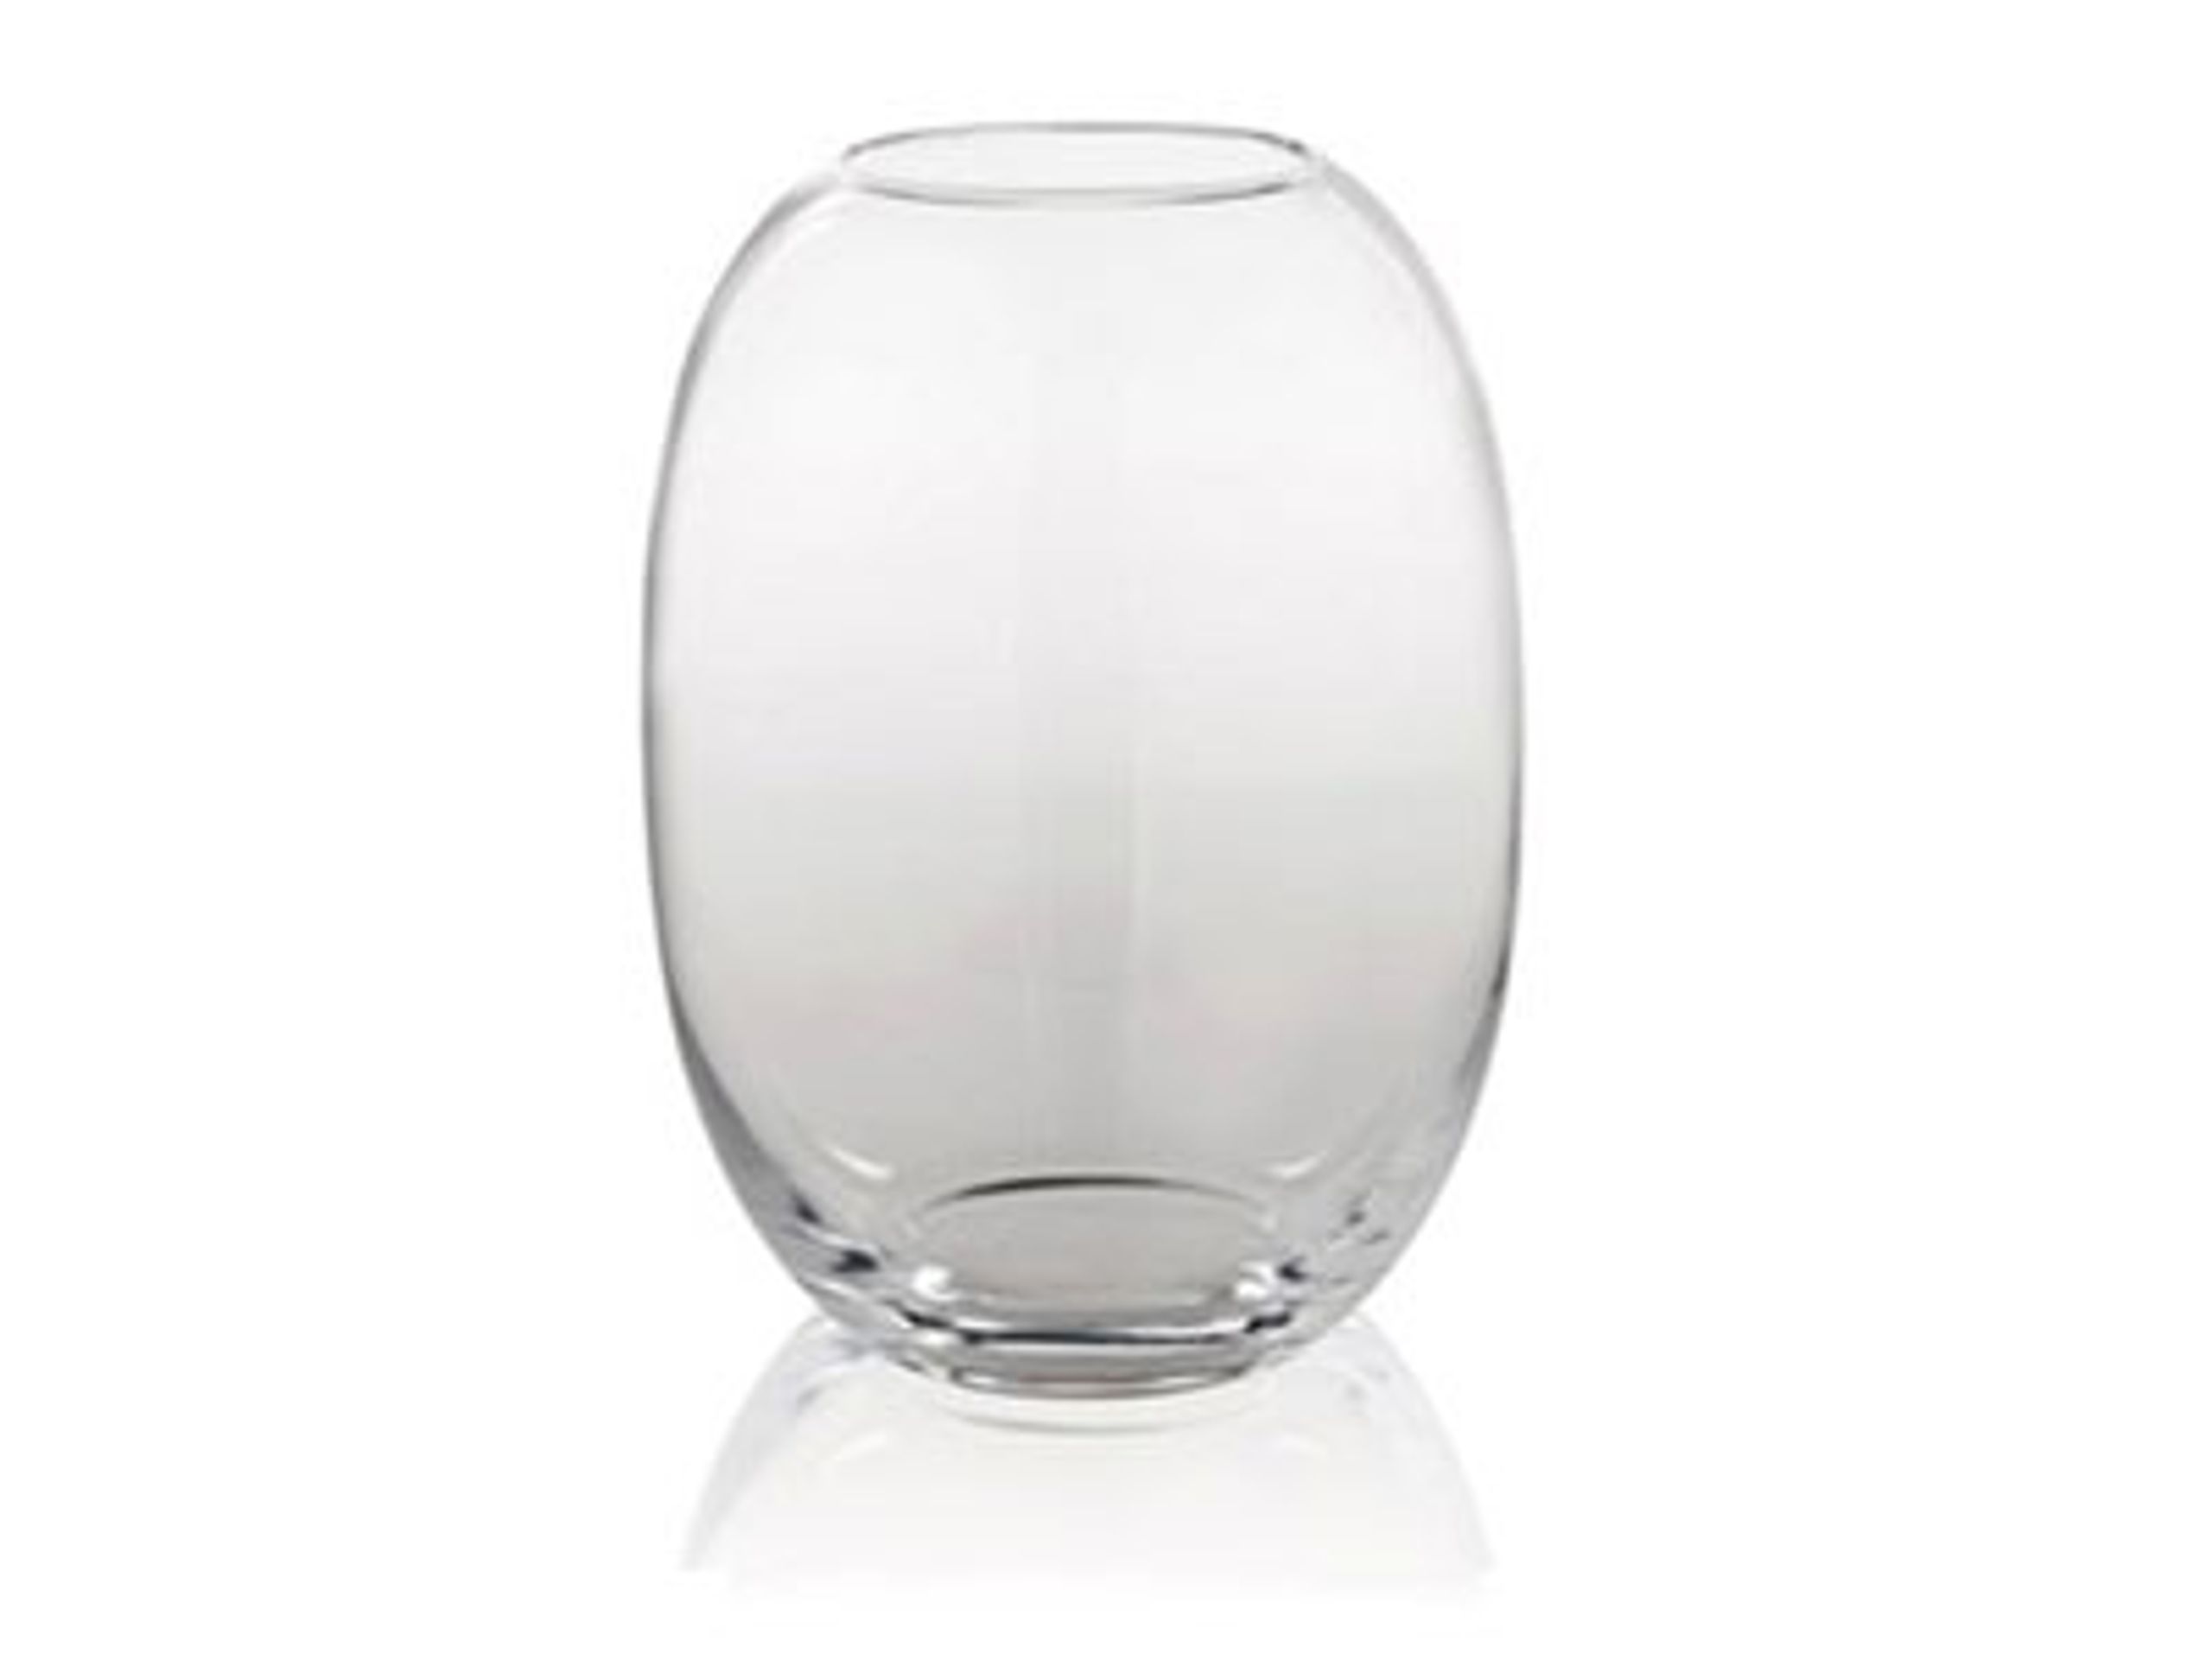 Piet Hein - Vase - Vase Glas  - Vase glas 50 cm - KLAR